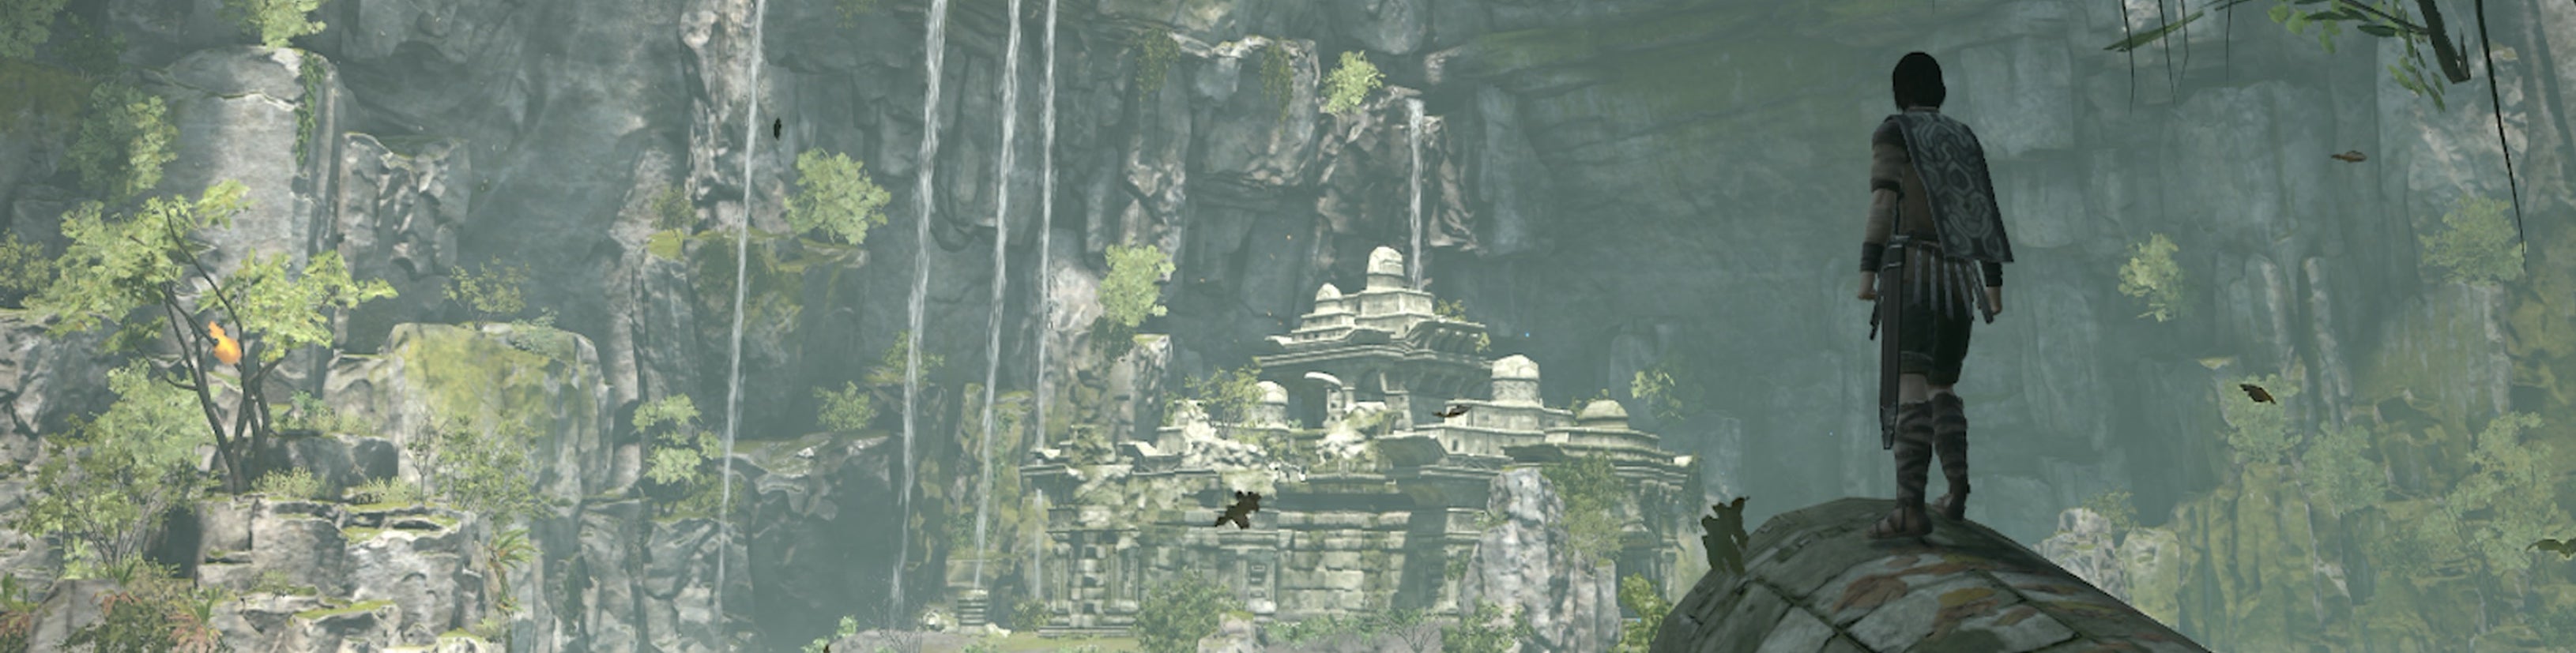 Imagen para Análisis técnico del remake de Shadow of the Colossus para PS4